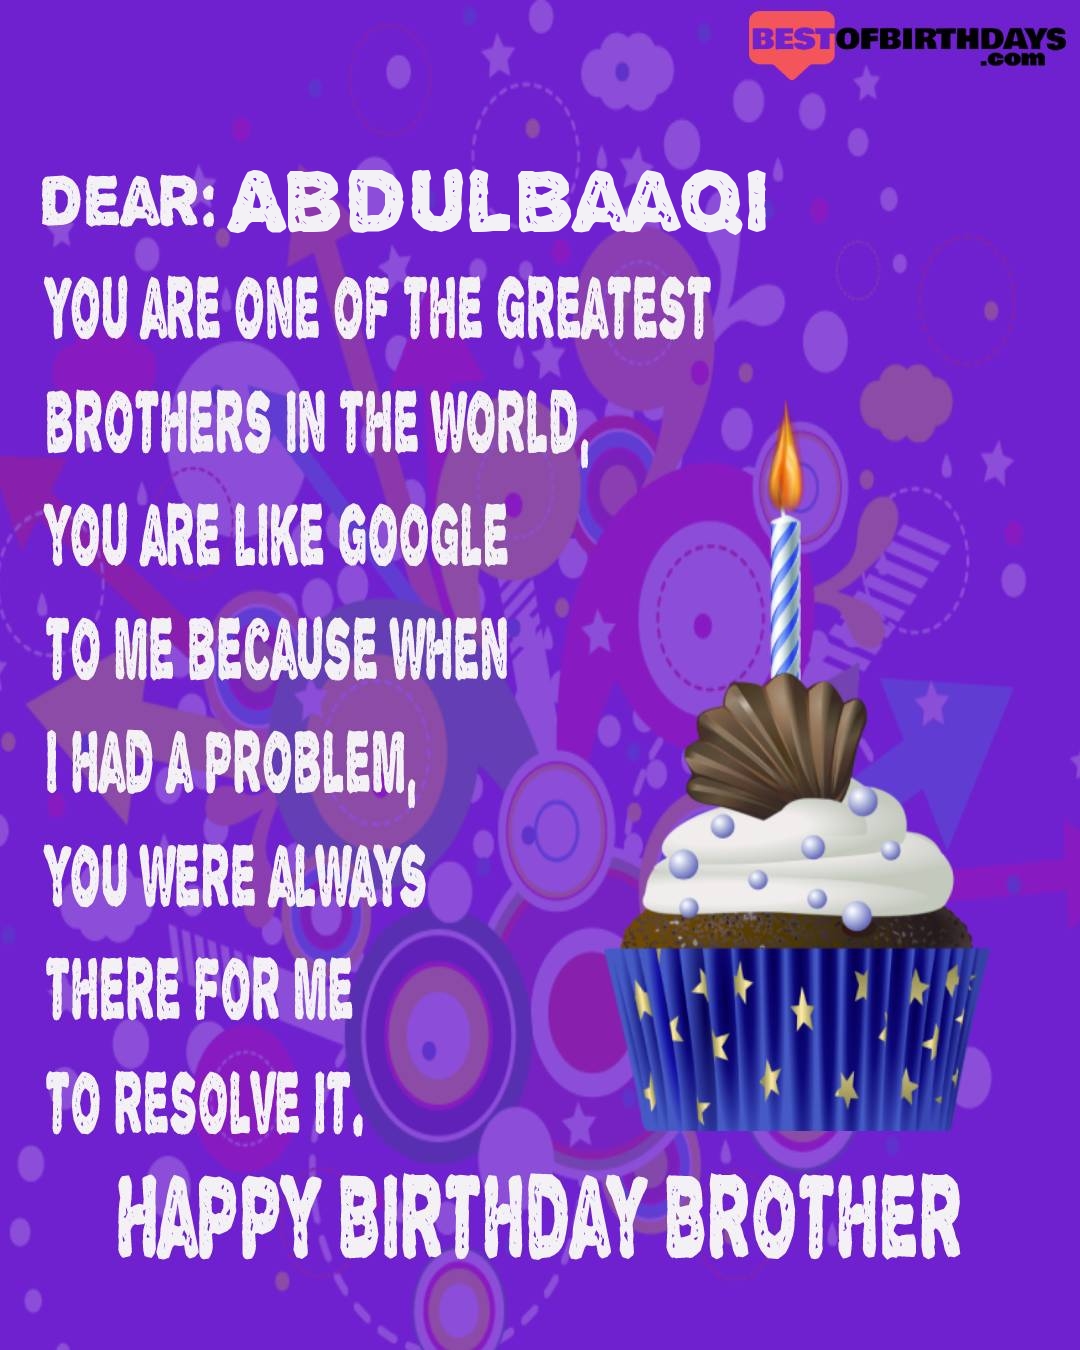 Happy birthday abdulbaaqi bhai brother bro